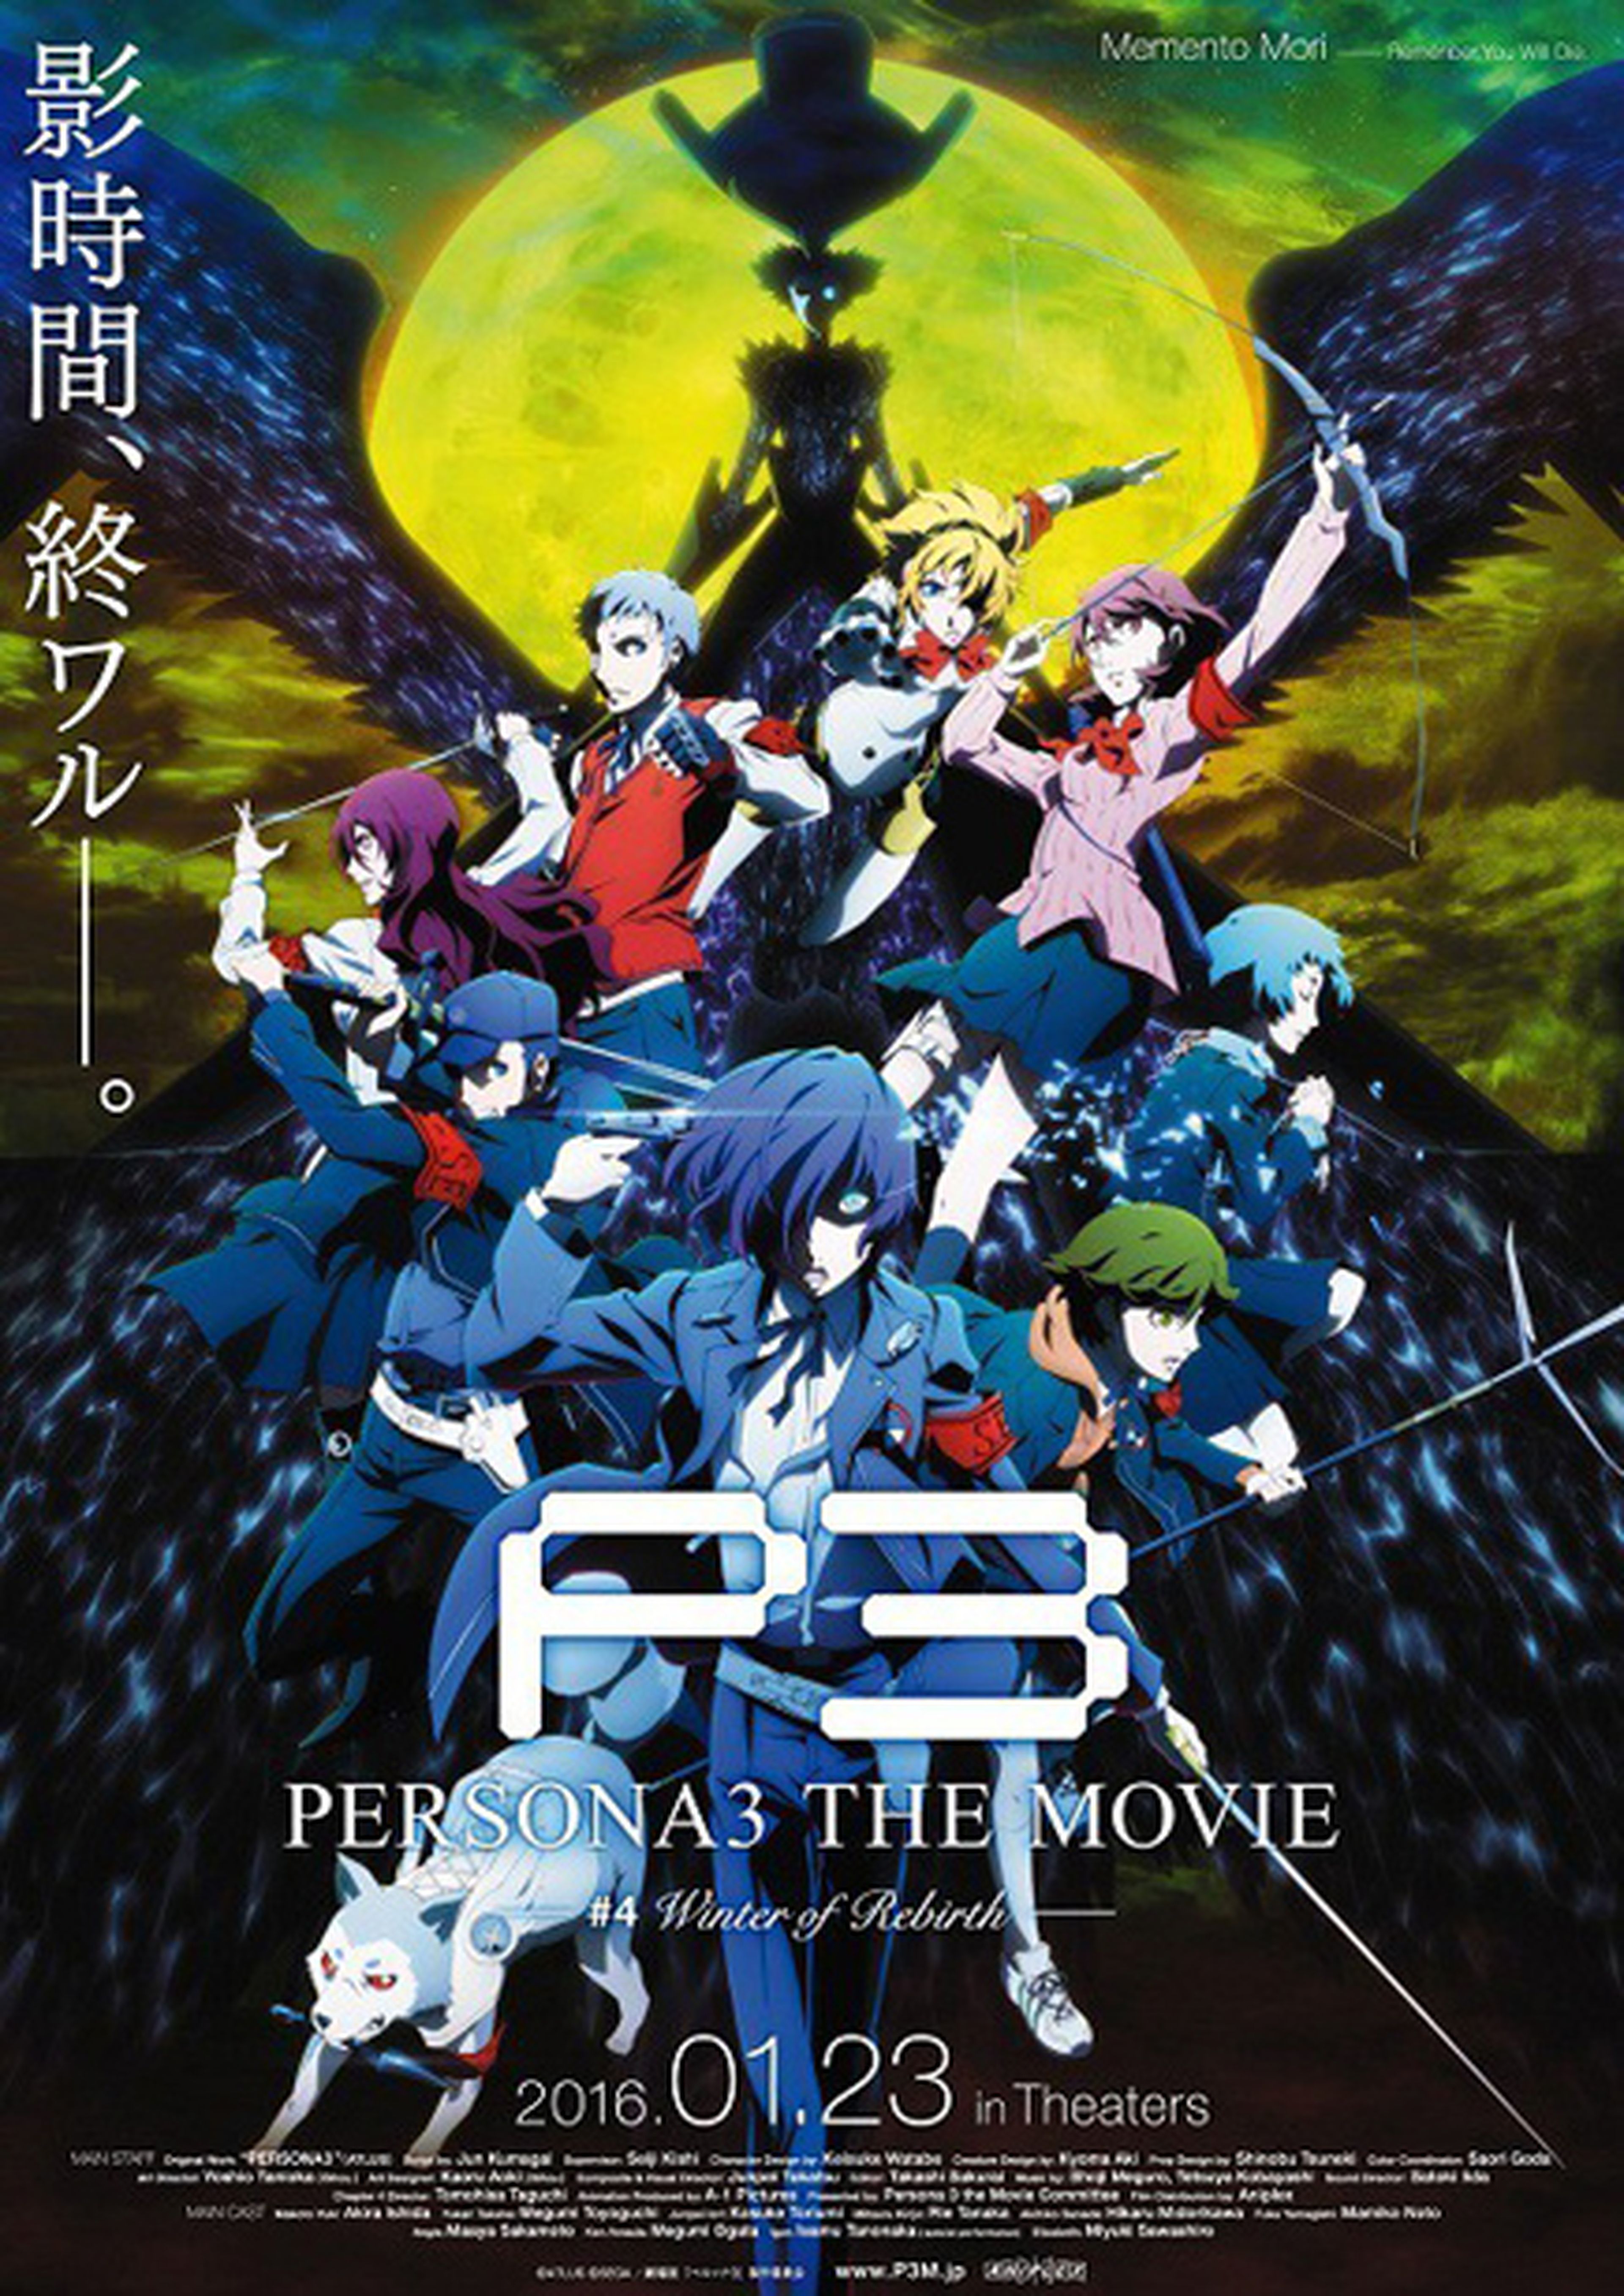 Persona 3 the Movie #4, en enero